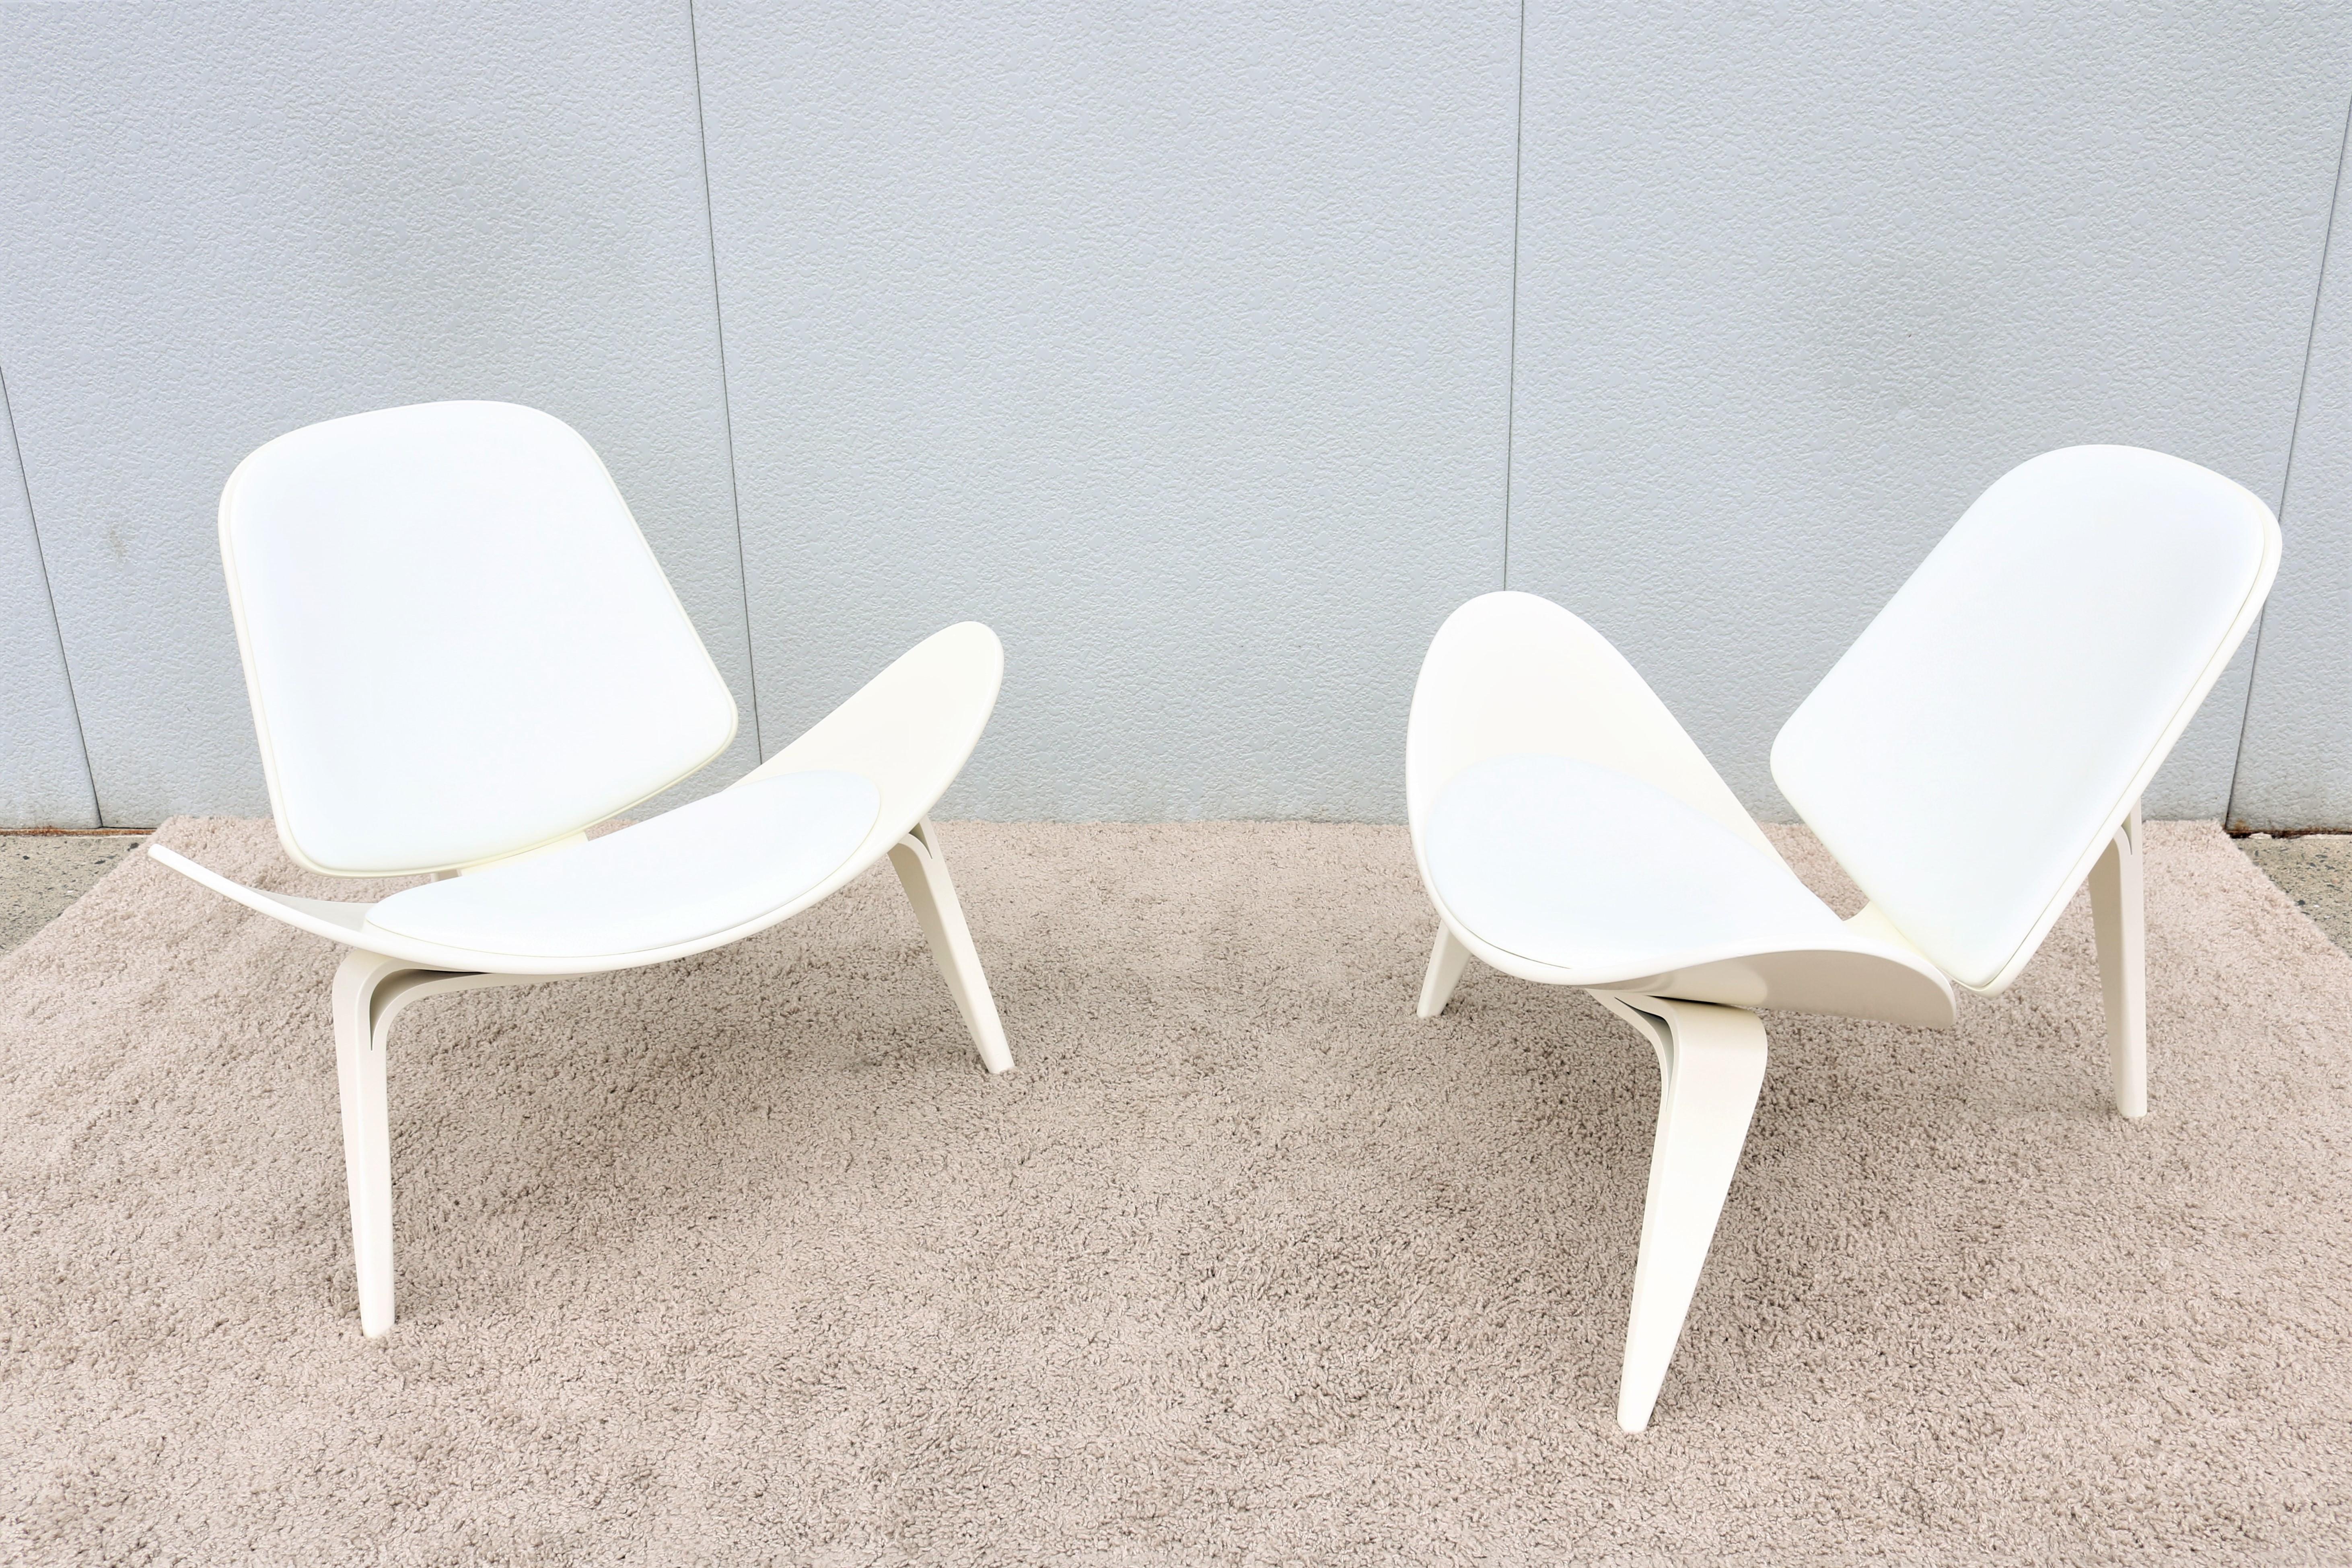 Mid-Century Modern Paire de chaises coquillage CH07 de Hans J. Wegner pour Carl Hansen, de style danois moderne du milieu du siècle dernier en vente